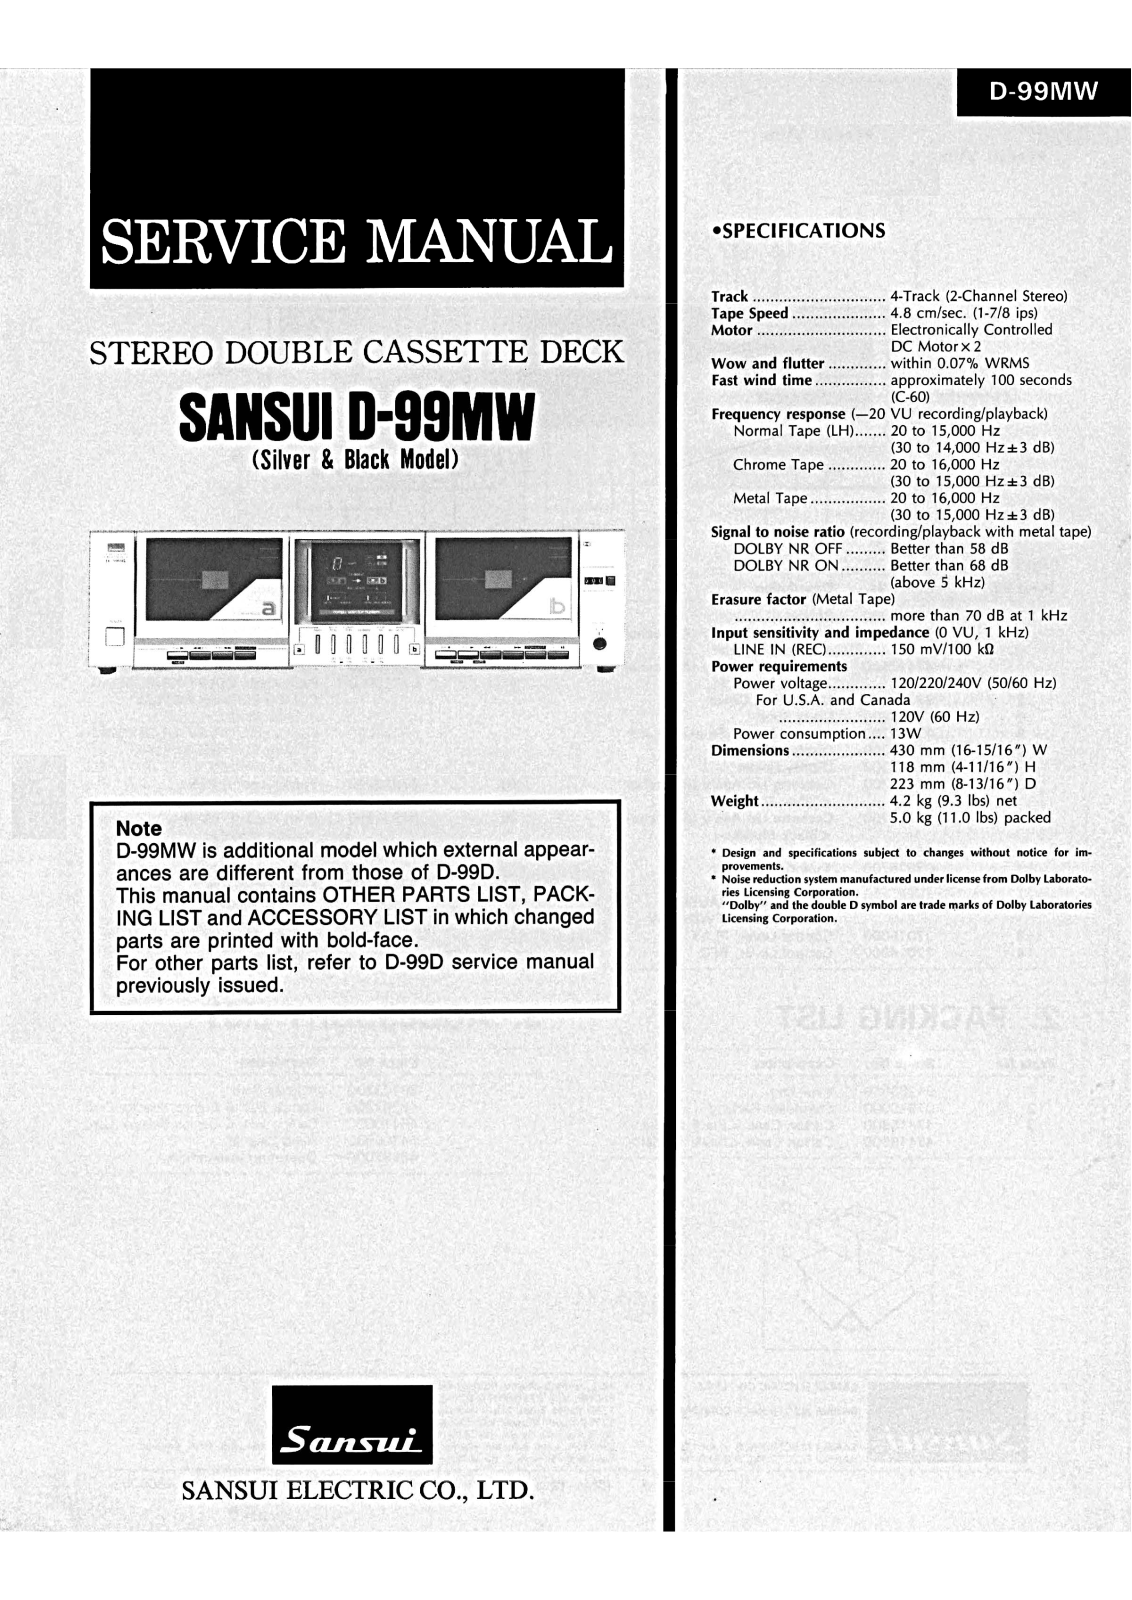 Sansui D-99-MW Service Manual